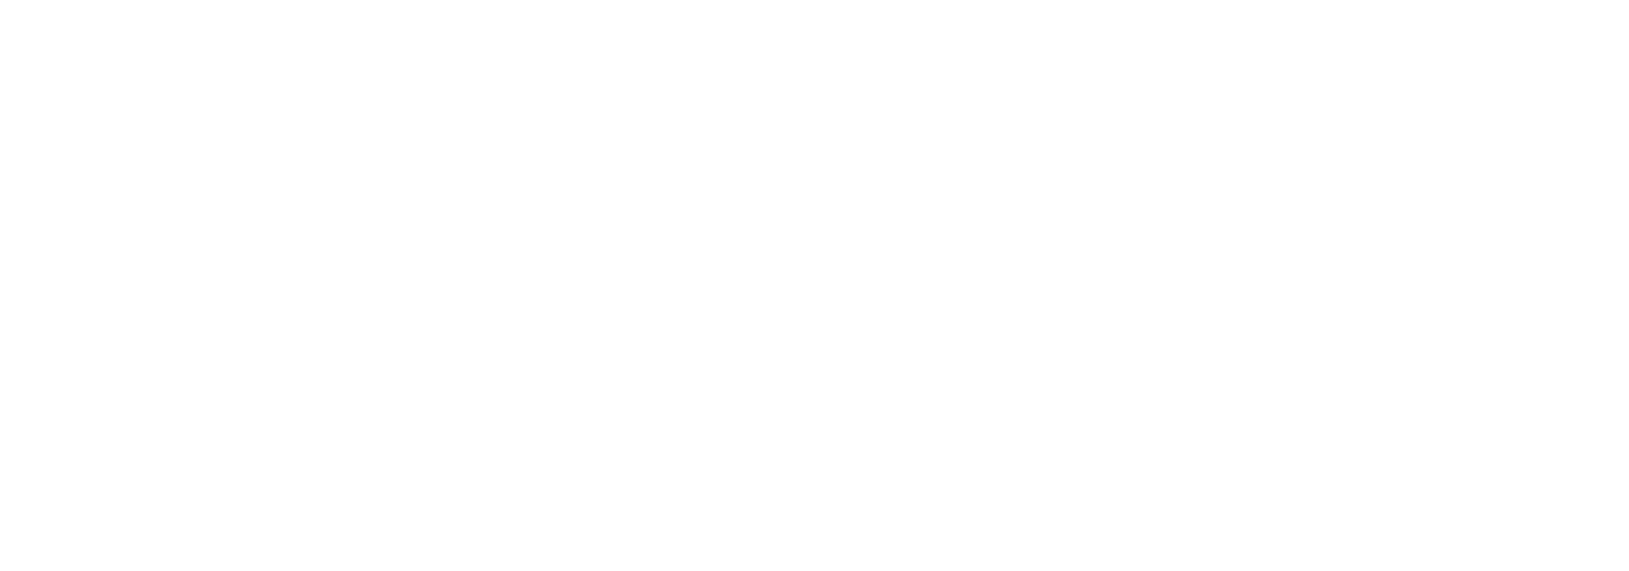 Lanehart Electrical Contractors Lanehart Electrical Contractors